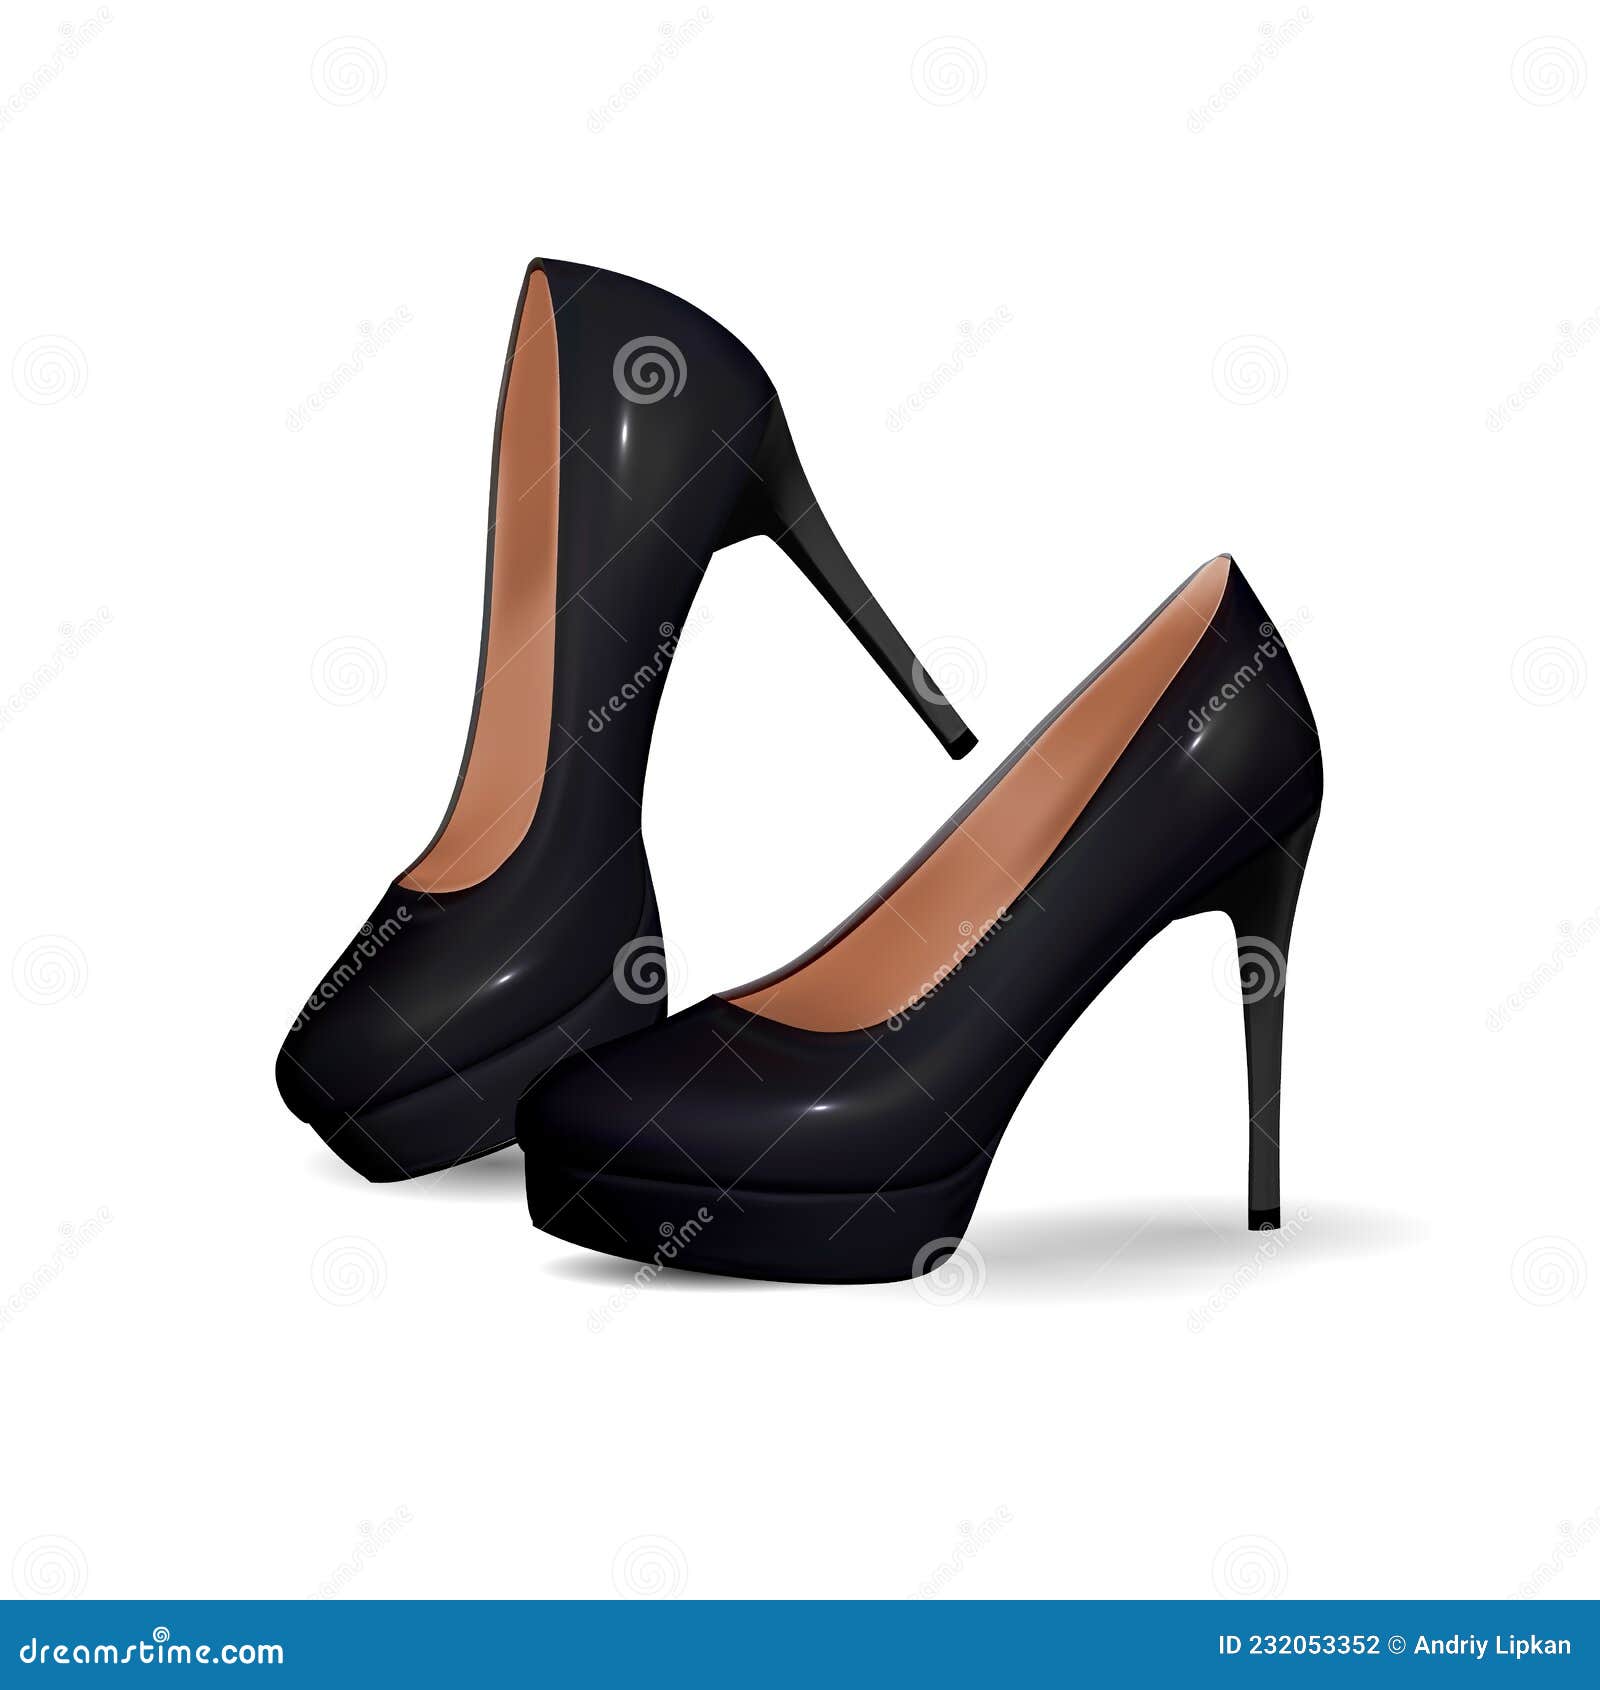 Zapatos De Mujer Clásicos Y Elegantes De Alto Nivel. Zapatos Elegantes Sobre Tacones Delgados. Objeto Aislado Cerrar En Fon Ilustración del Vector - de moderno, concepto: 232053352